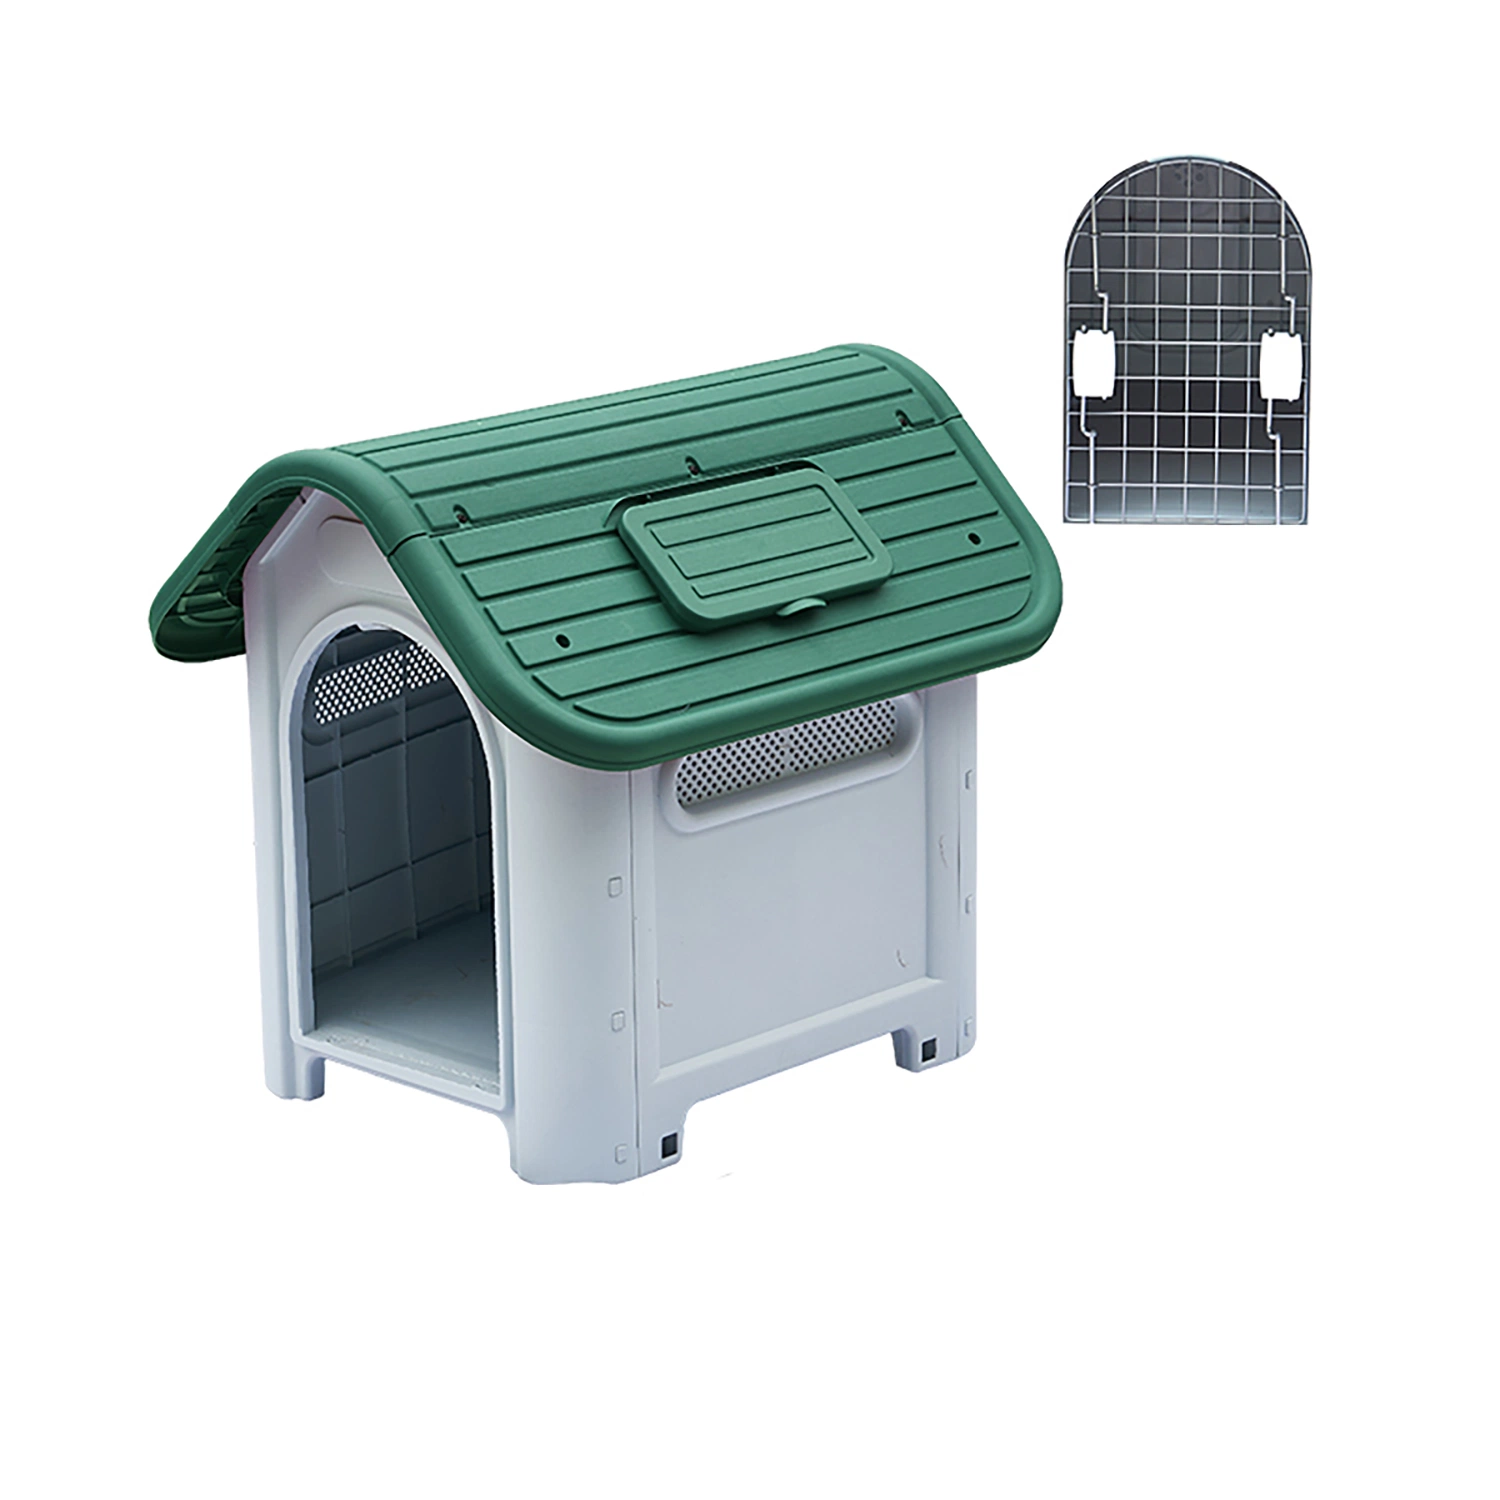 Ecológico - à prova de água Cheap moderno pequeno / cãozinho removível canil Canil Exterior confortável Ventile Luxury Plastic Dog Cage Pet House para Jardim quintal